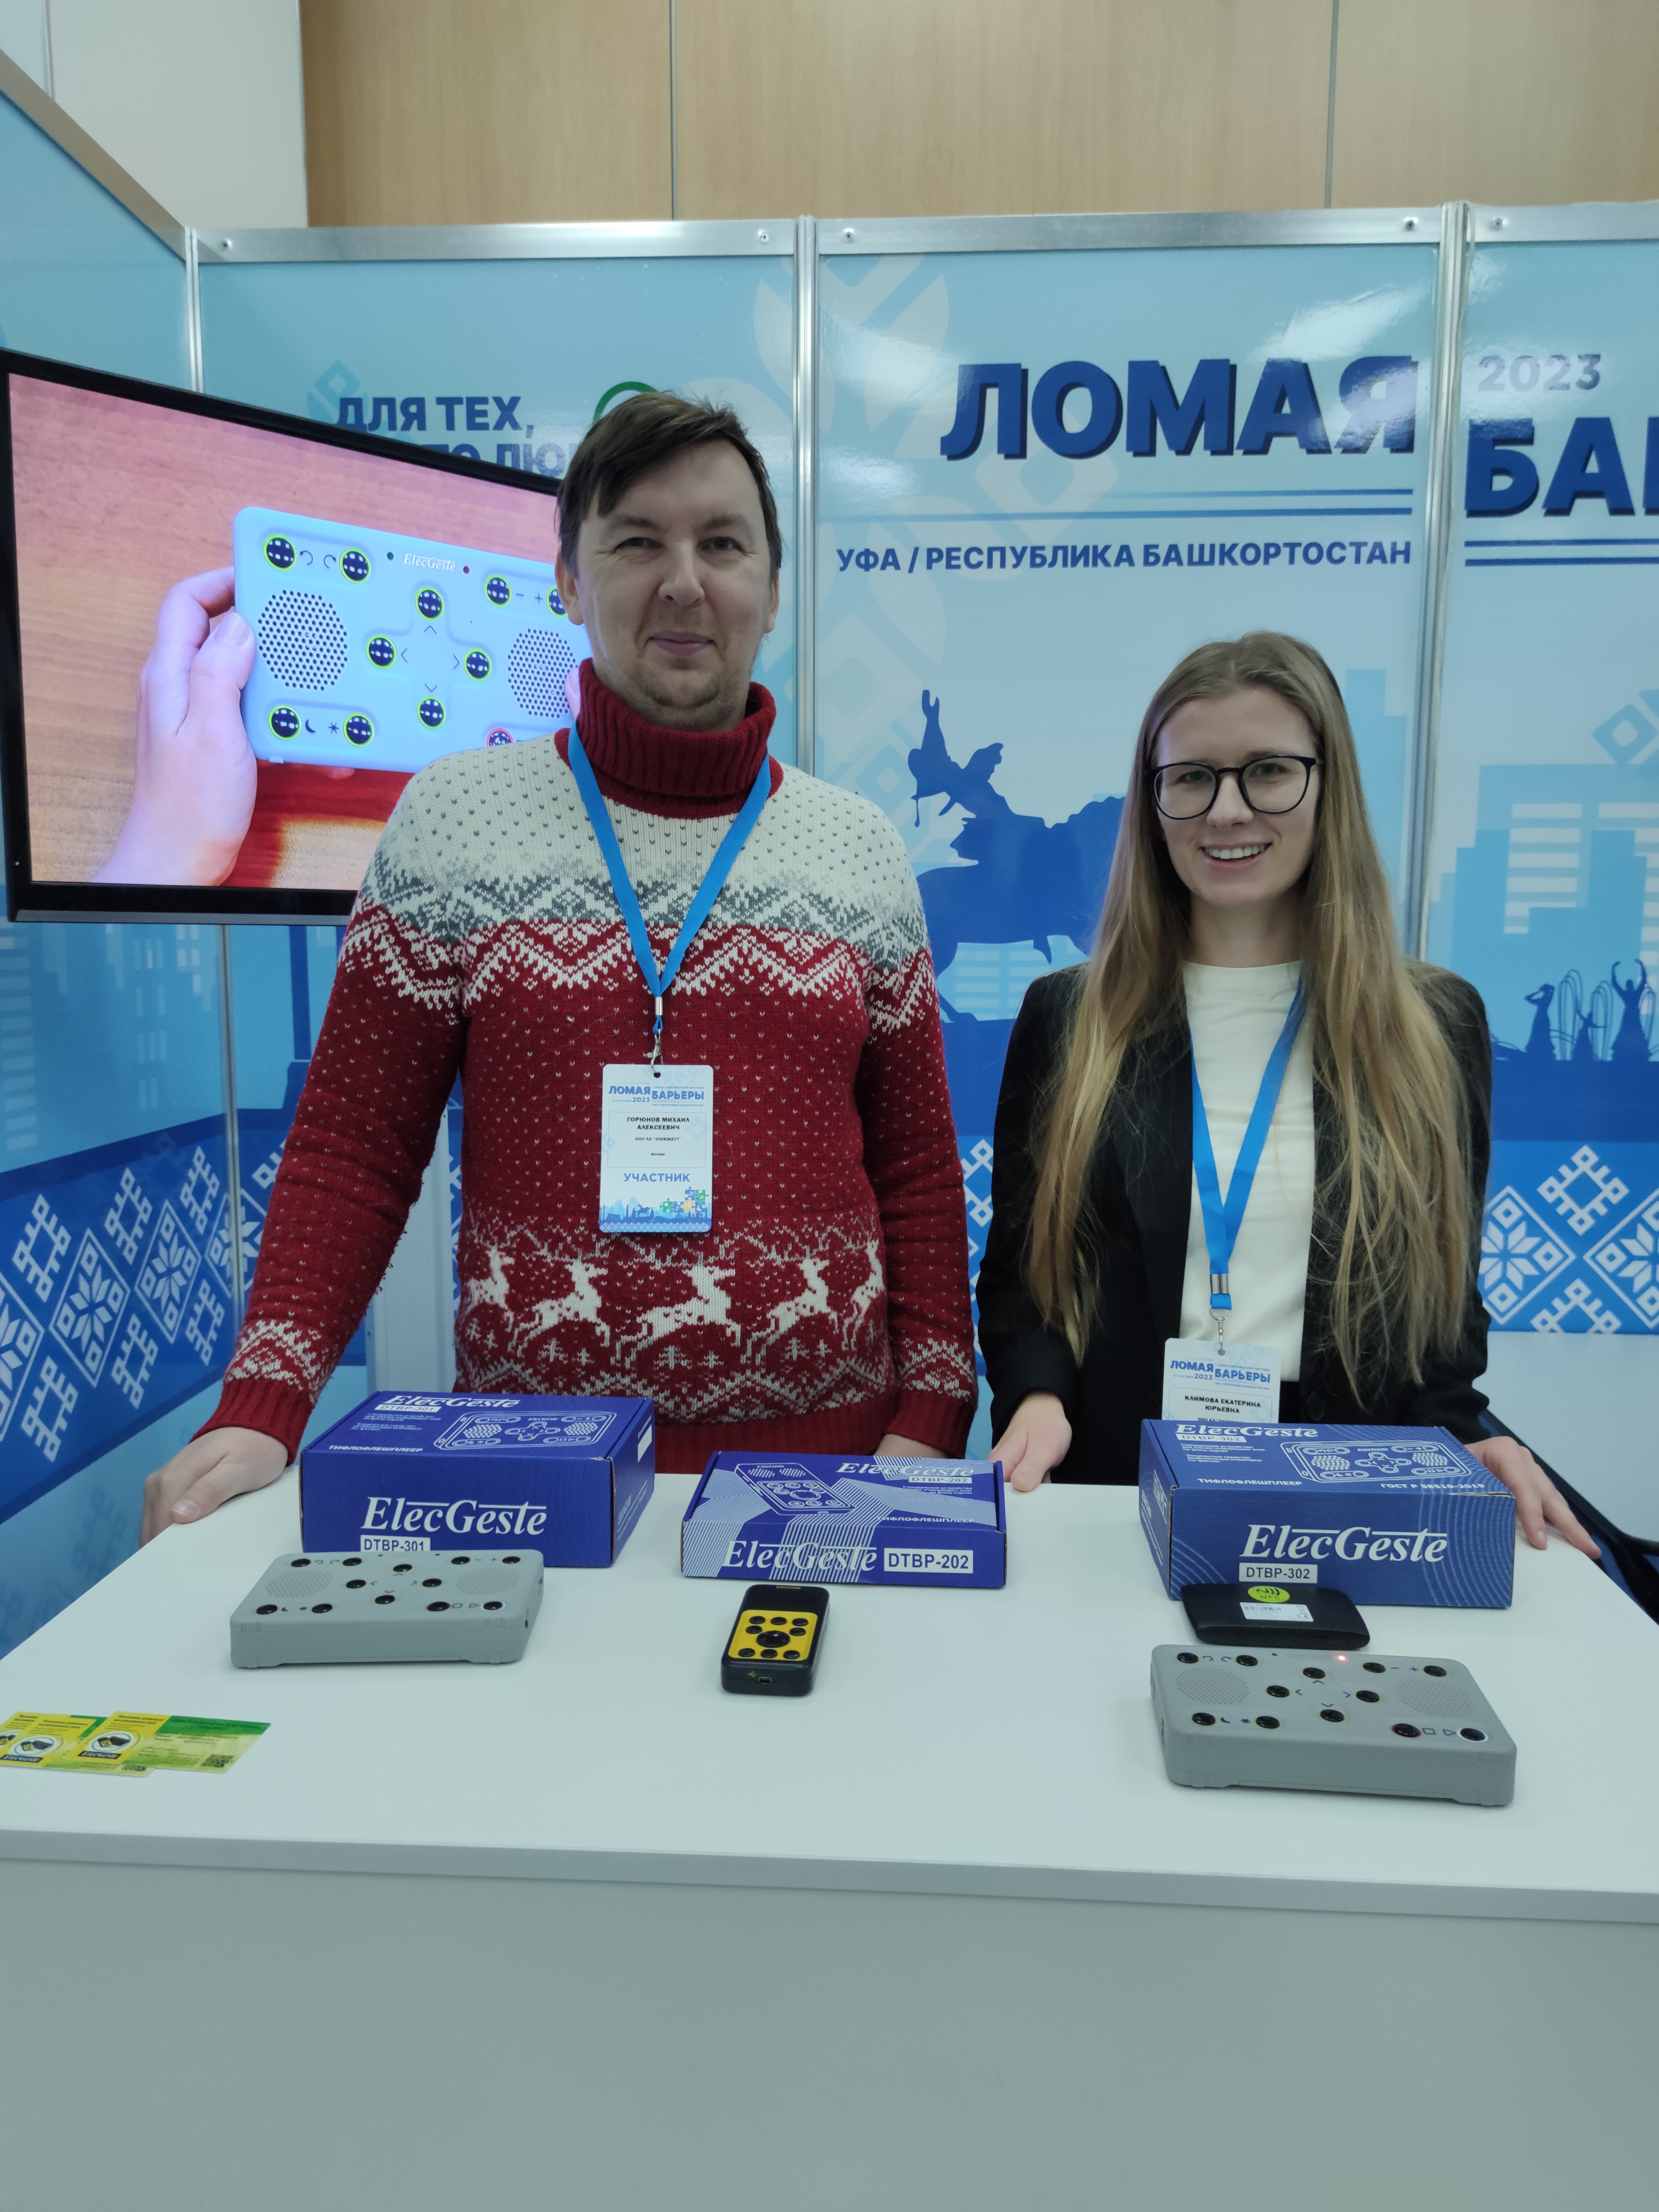 На фото Екатерина Климова и Гоюнов Михаил на фоне выставочного стенда компании